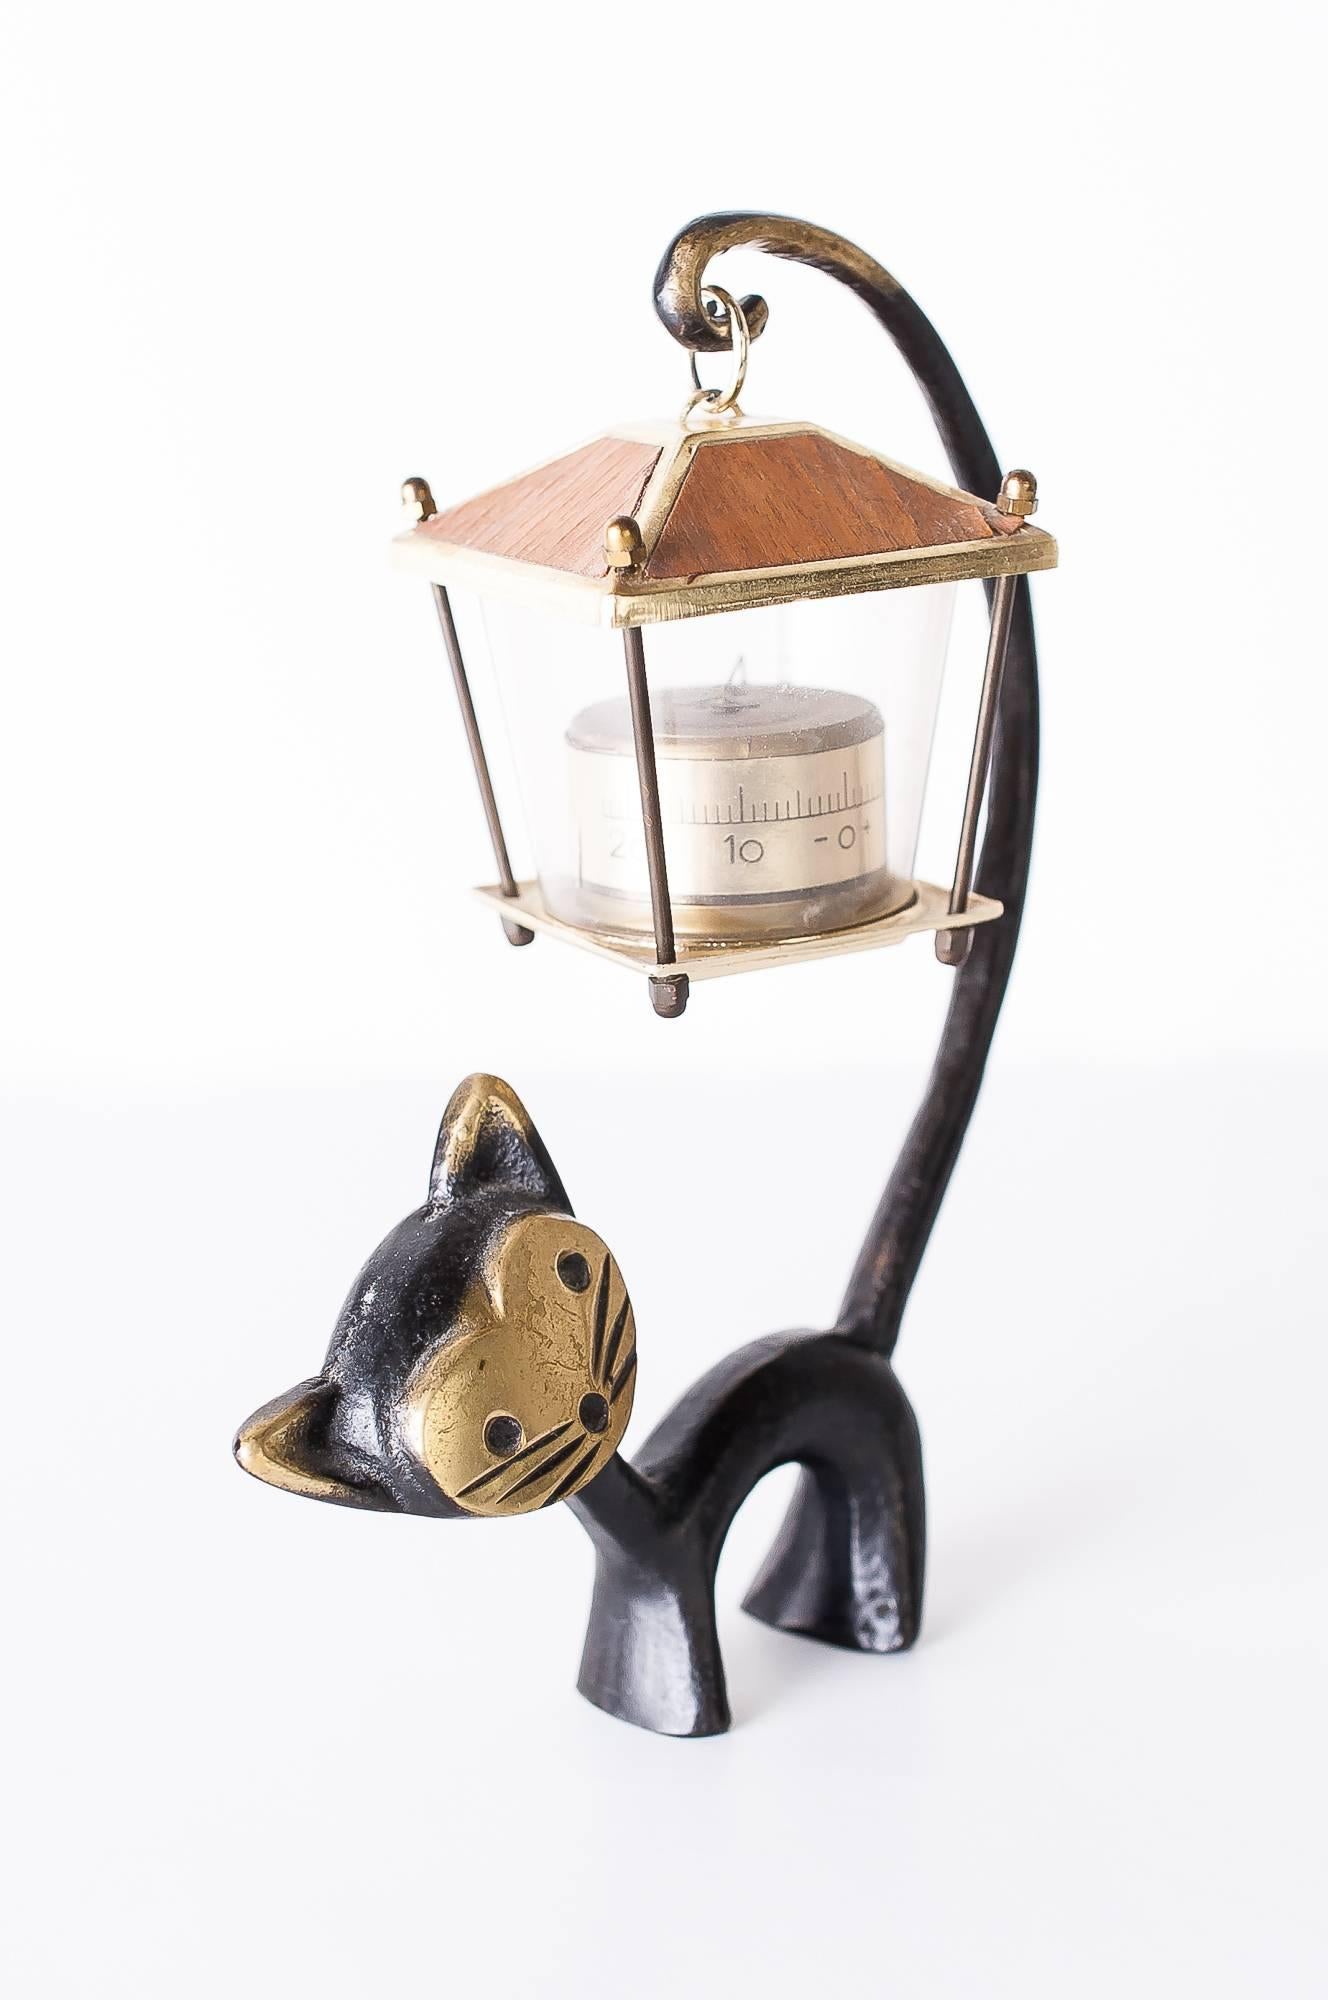 Figurine de chat Walter Bosse avec thermomètre, années 1950
Thermomètre de bureau autrichien, figurine de chat et thermomètre en forme de lanterne.
Conçu par Walter Bosse, exécuté par Hertha Baller Austria dans les années 1950.
Etat original.